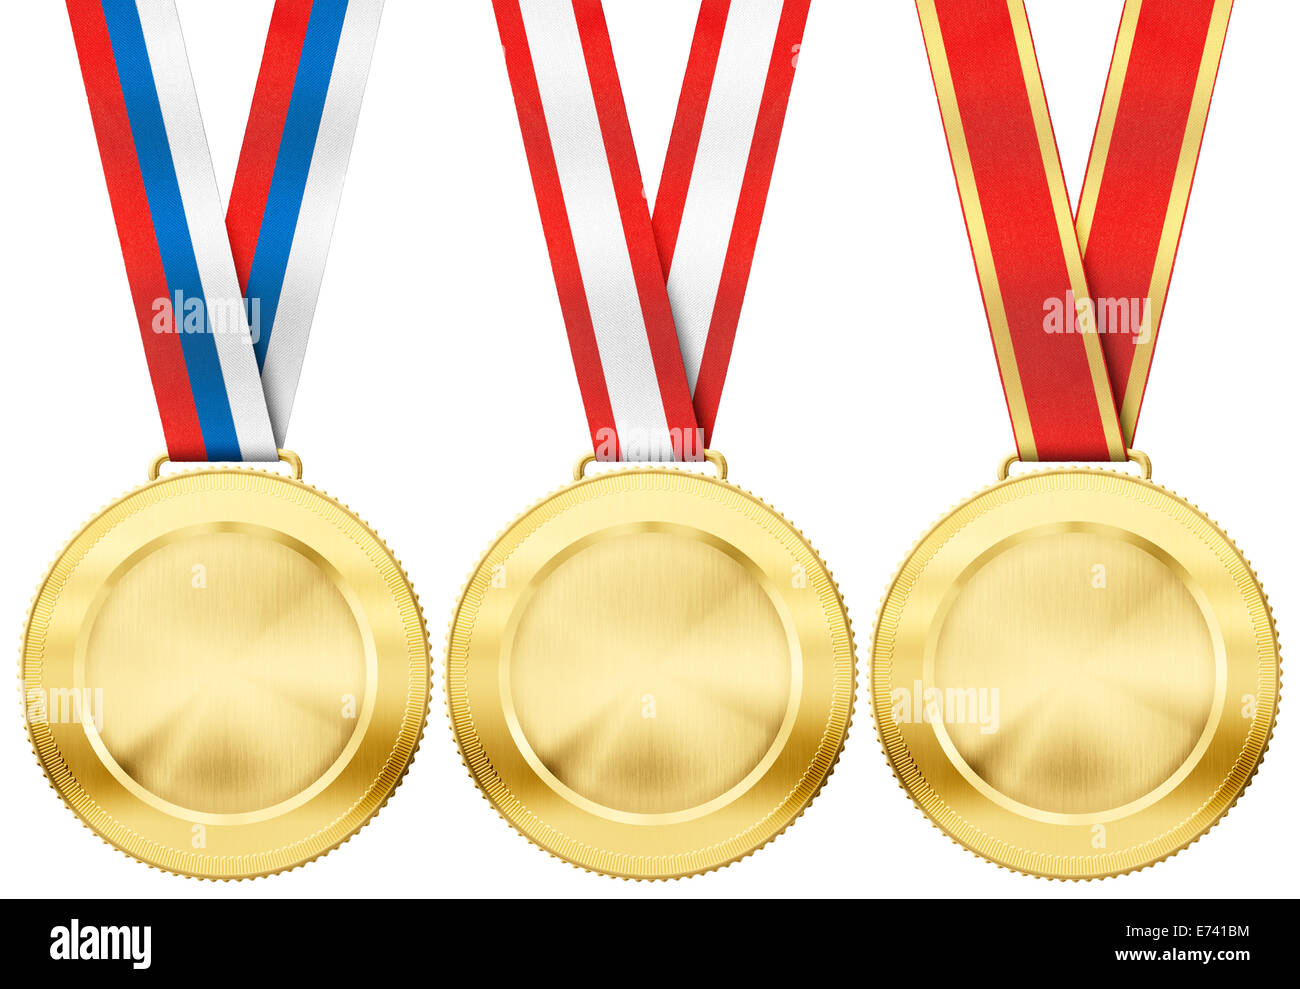 Goldmedaille mit verschiedenen Band eingeben isoliert auf weiss Stockfoto